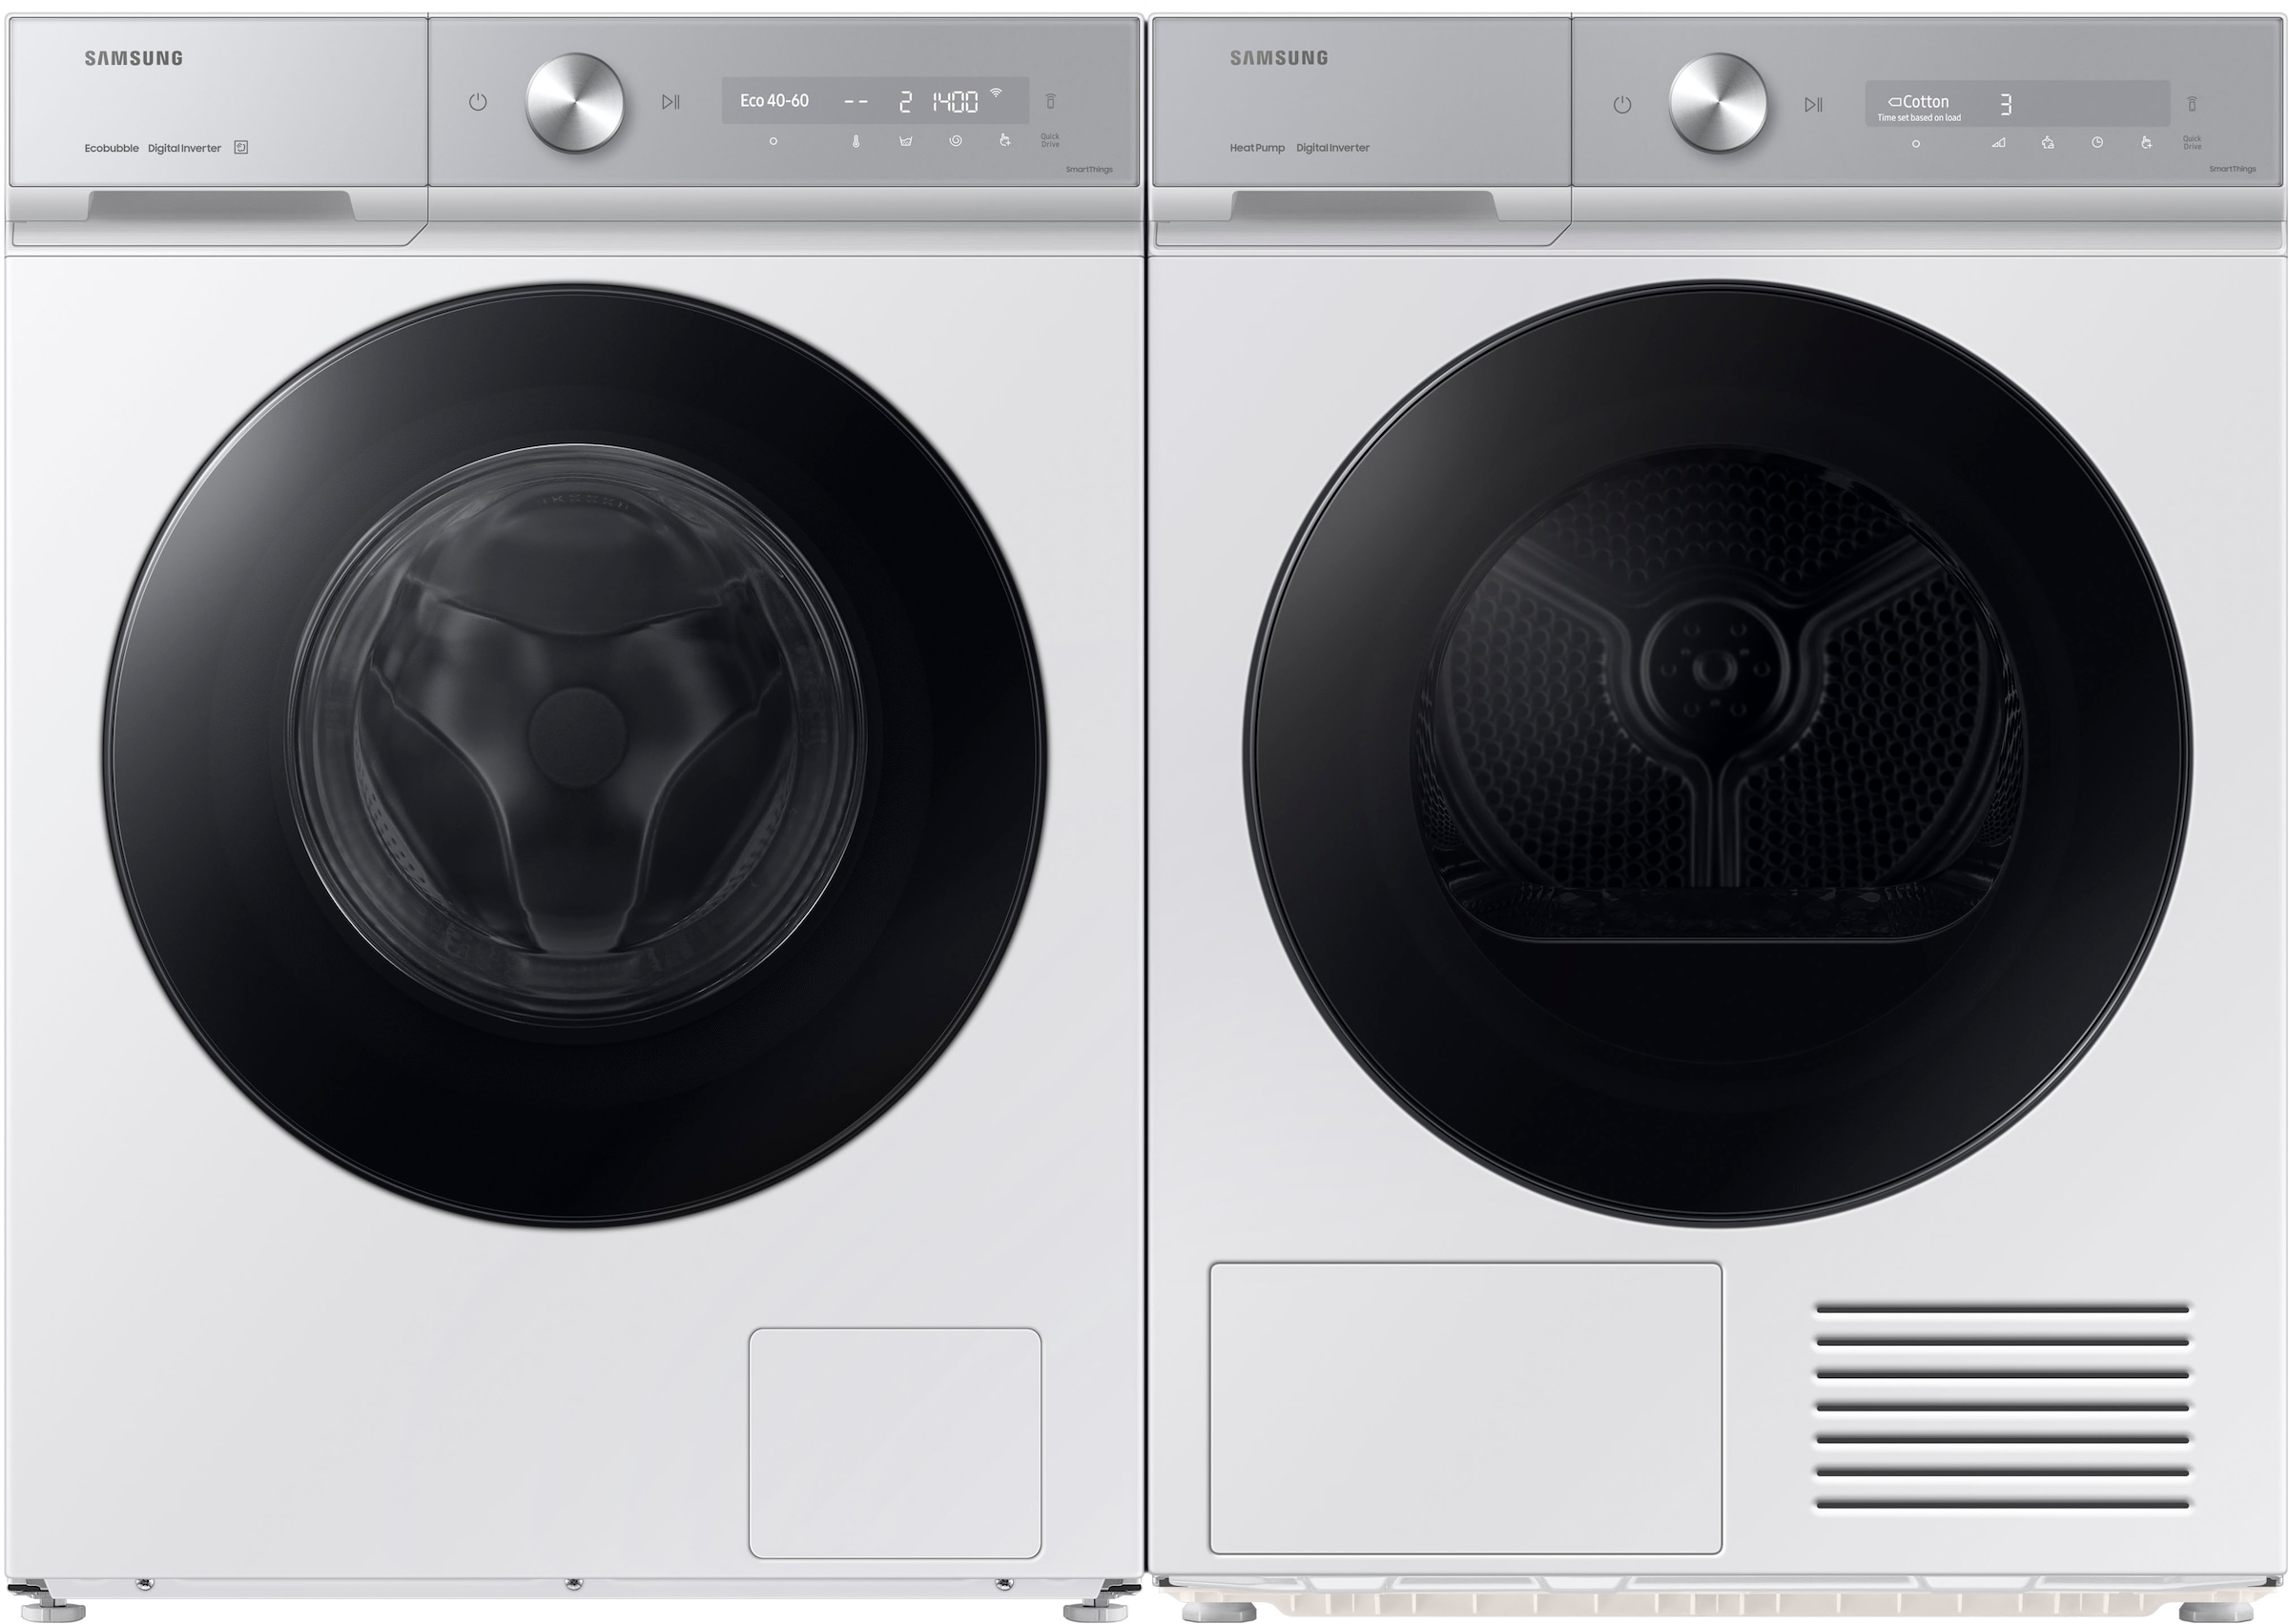 Samsung Waschmaschine »WW90DB8U95GH«, WW8400D, WW90DB8U95GH, 9 kg, 1400 U/min